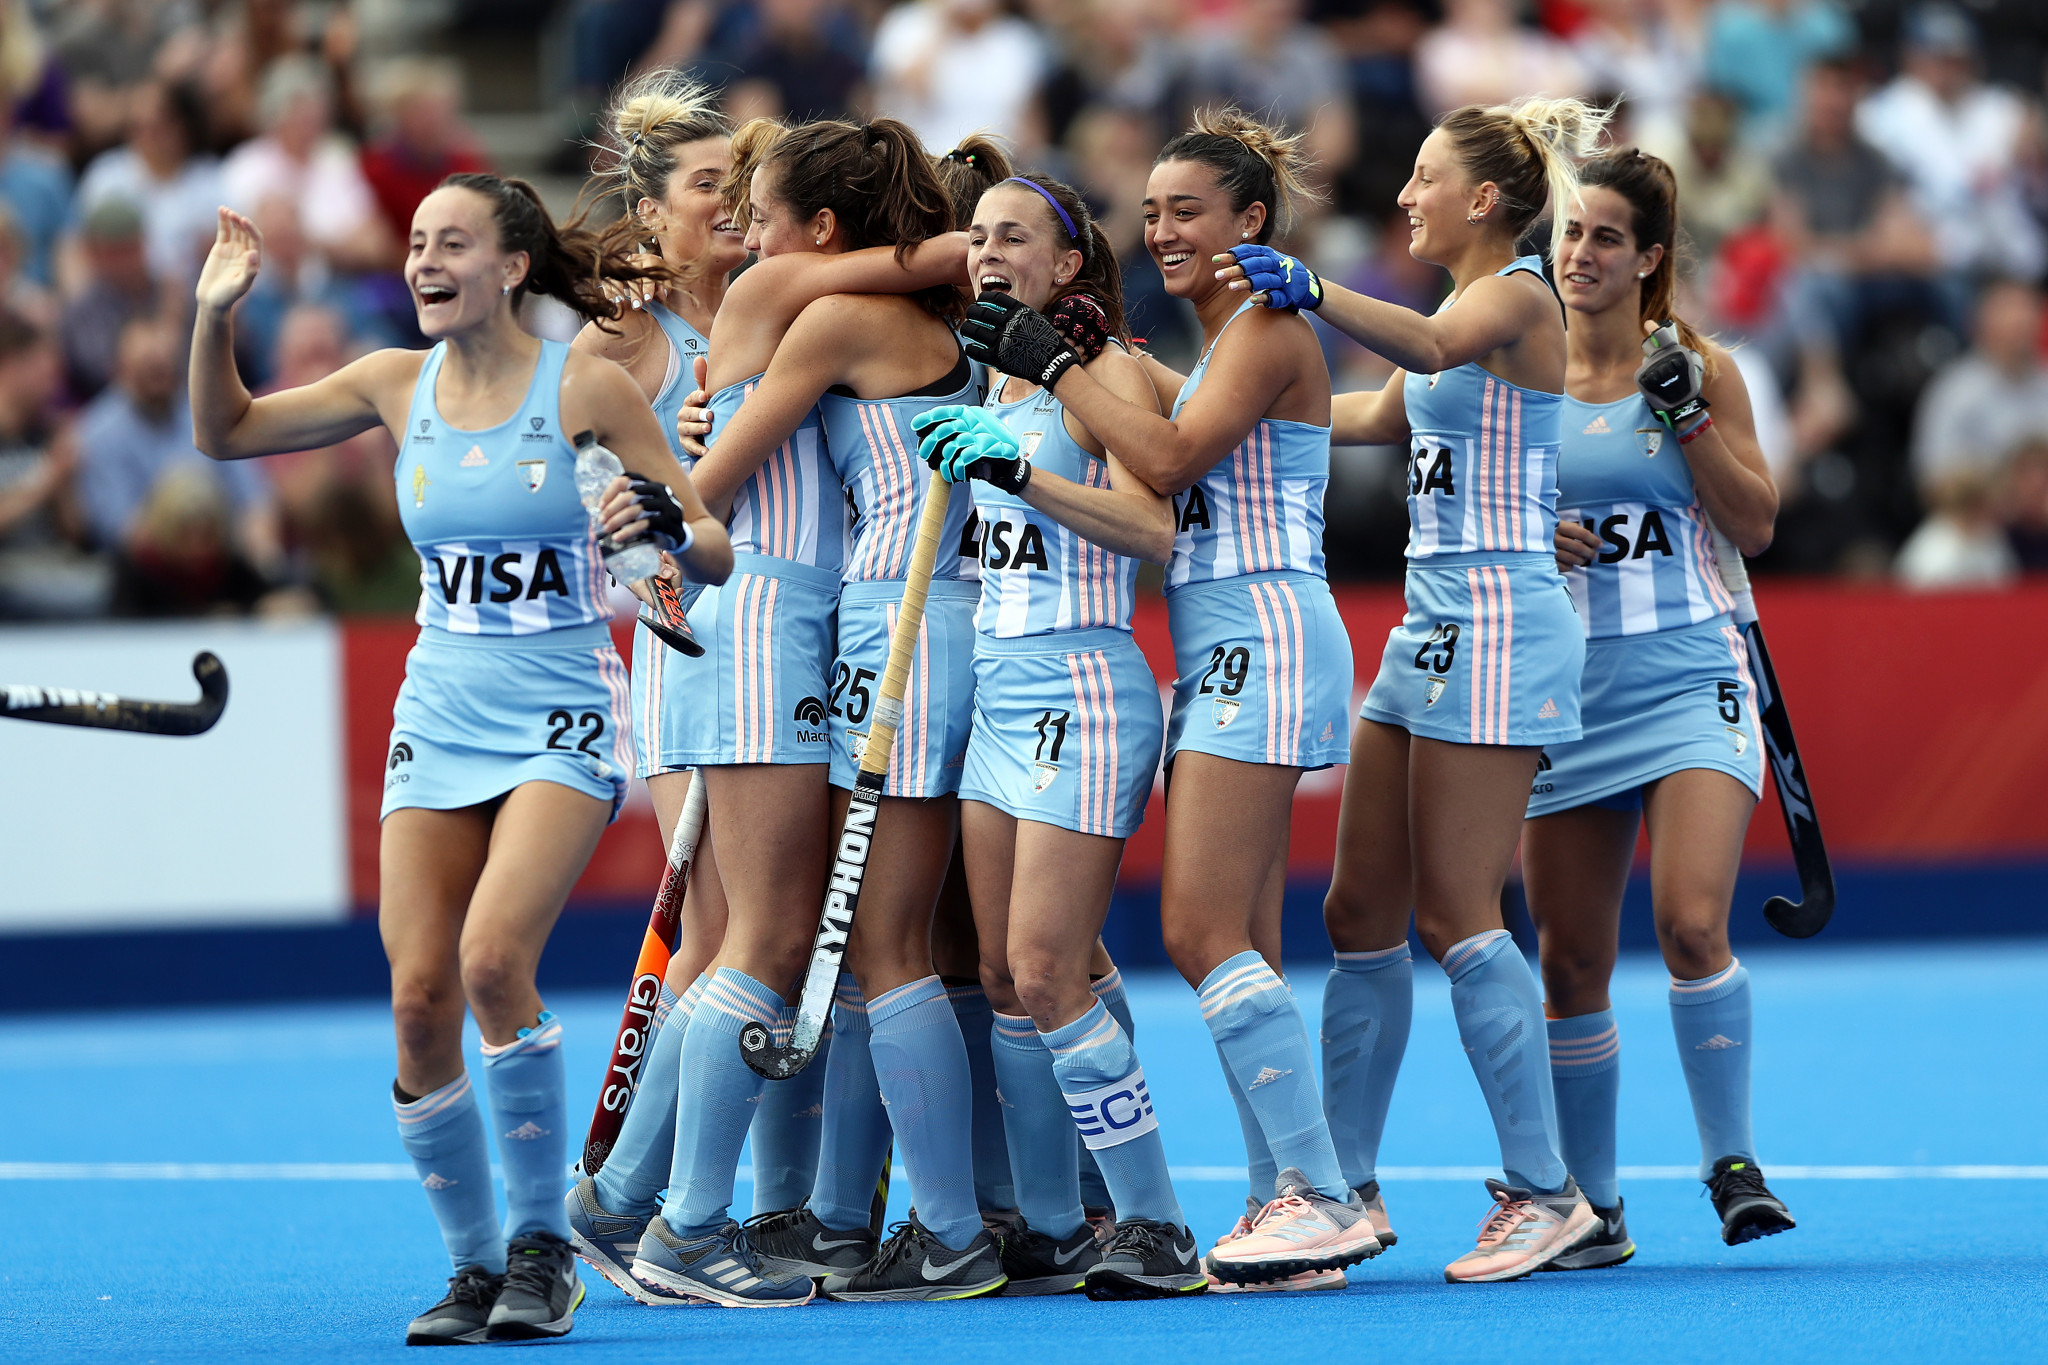 Argentina women beat Australia to go top of FIH Pro League